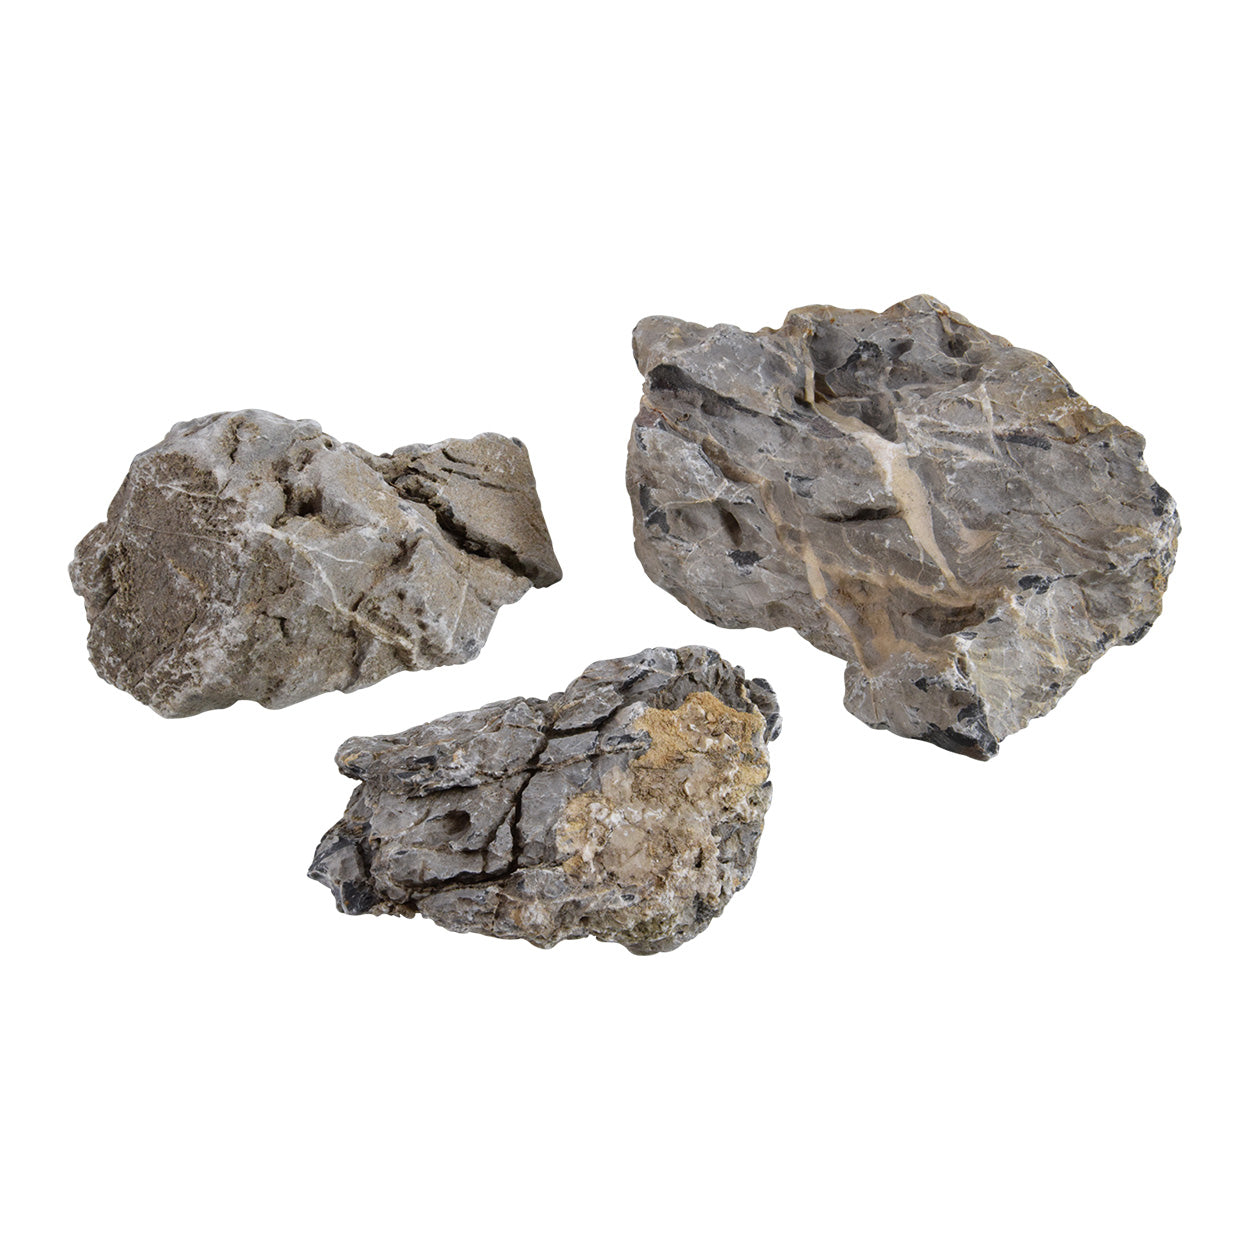 Seiryu Stone/Mini Landscape rock per pound